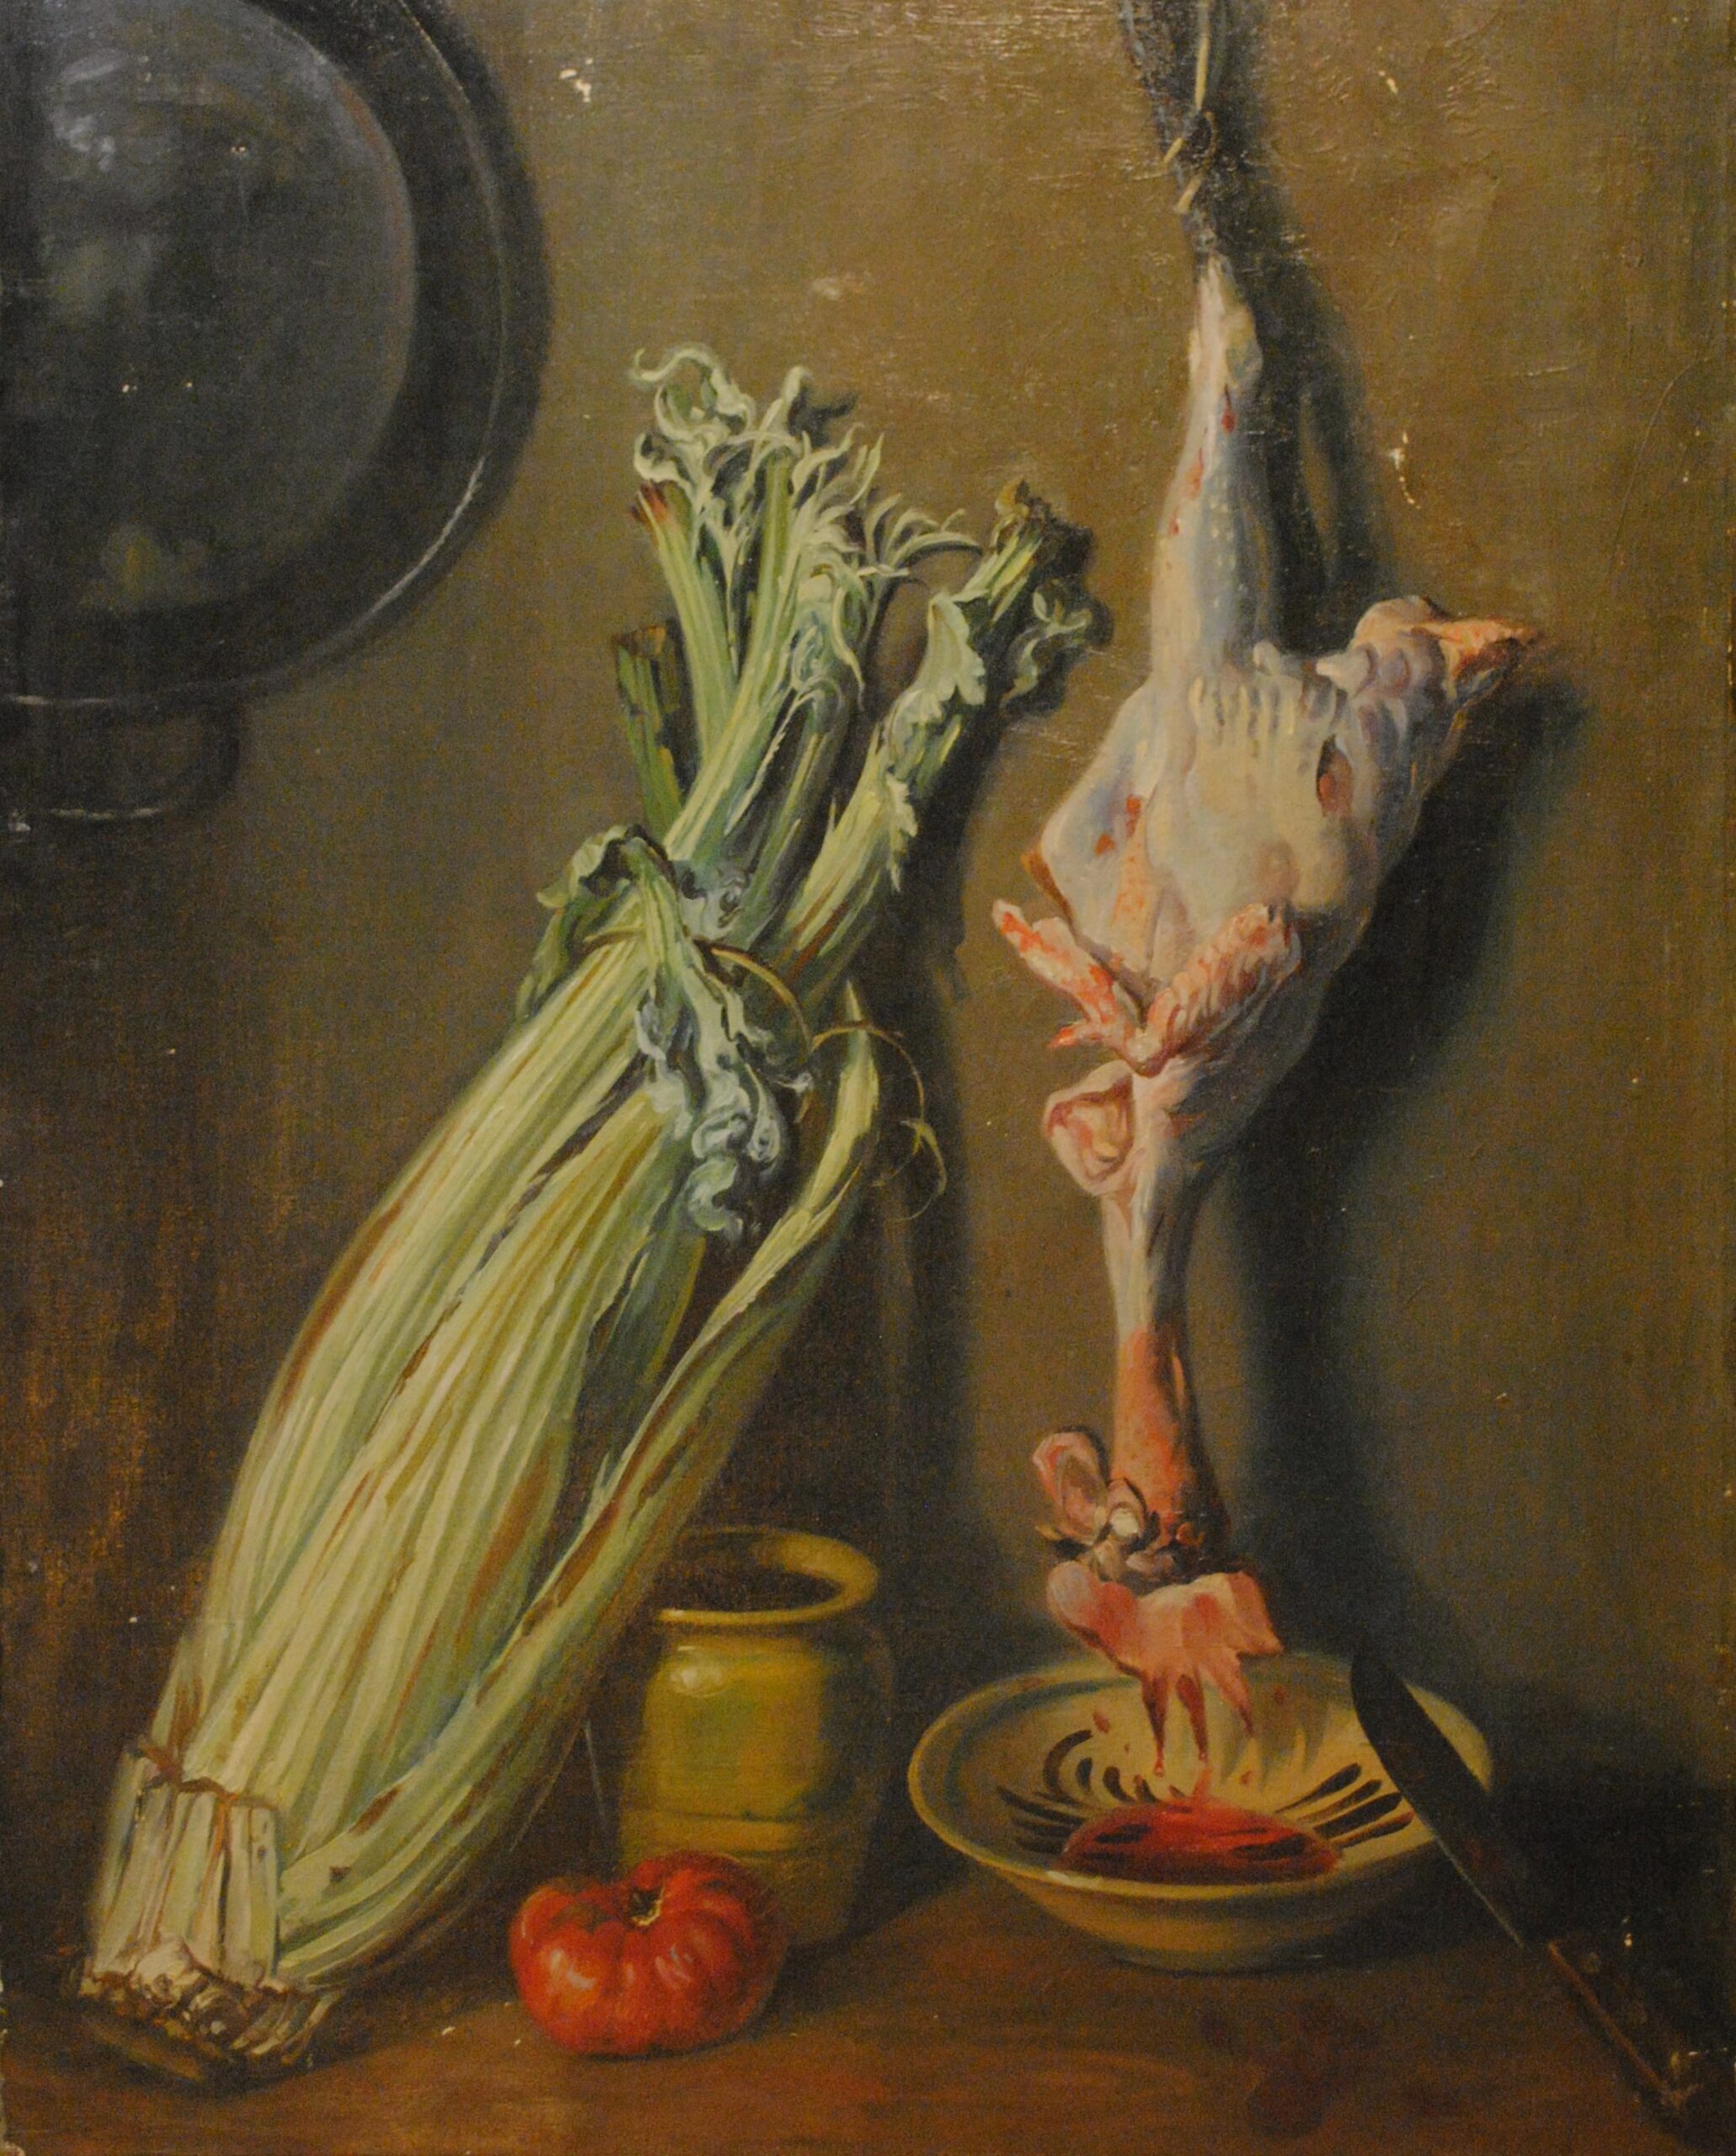 Pintura de José Manaut titulada El gallo muerto. Óleo sobre lienzo.